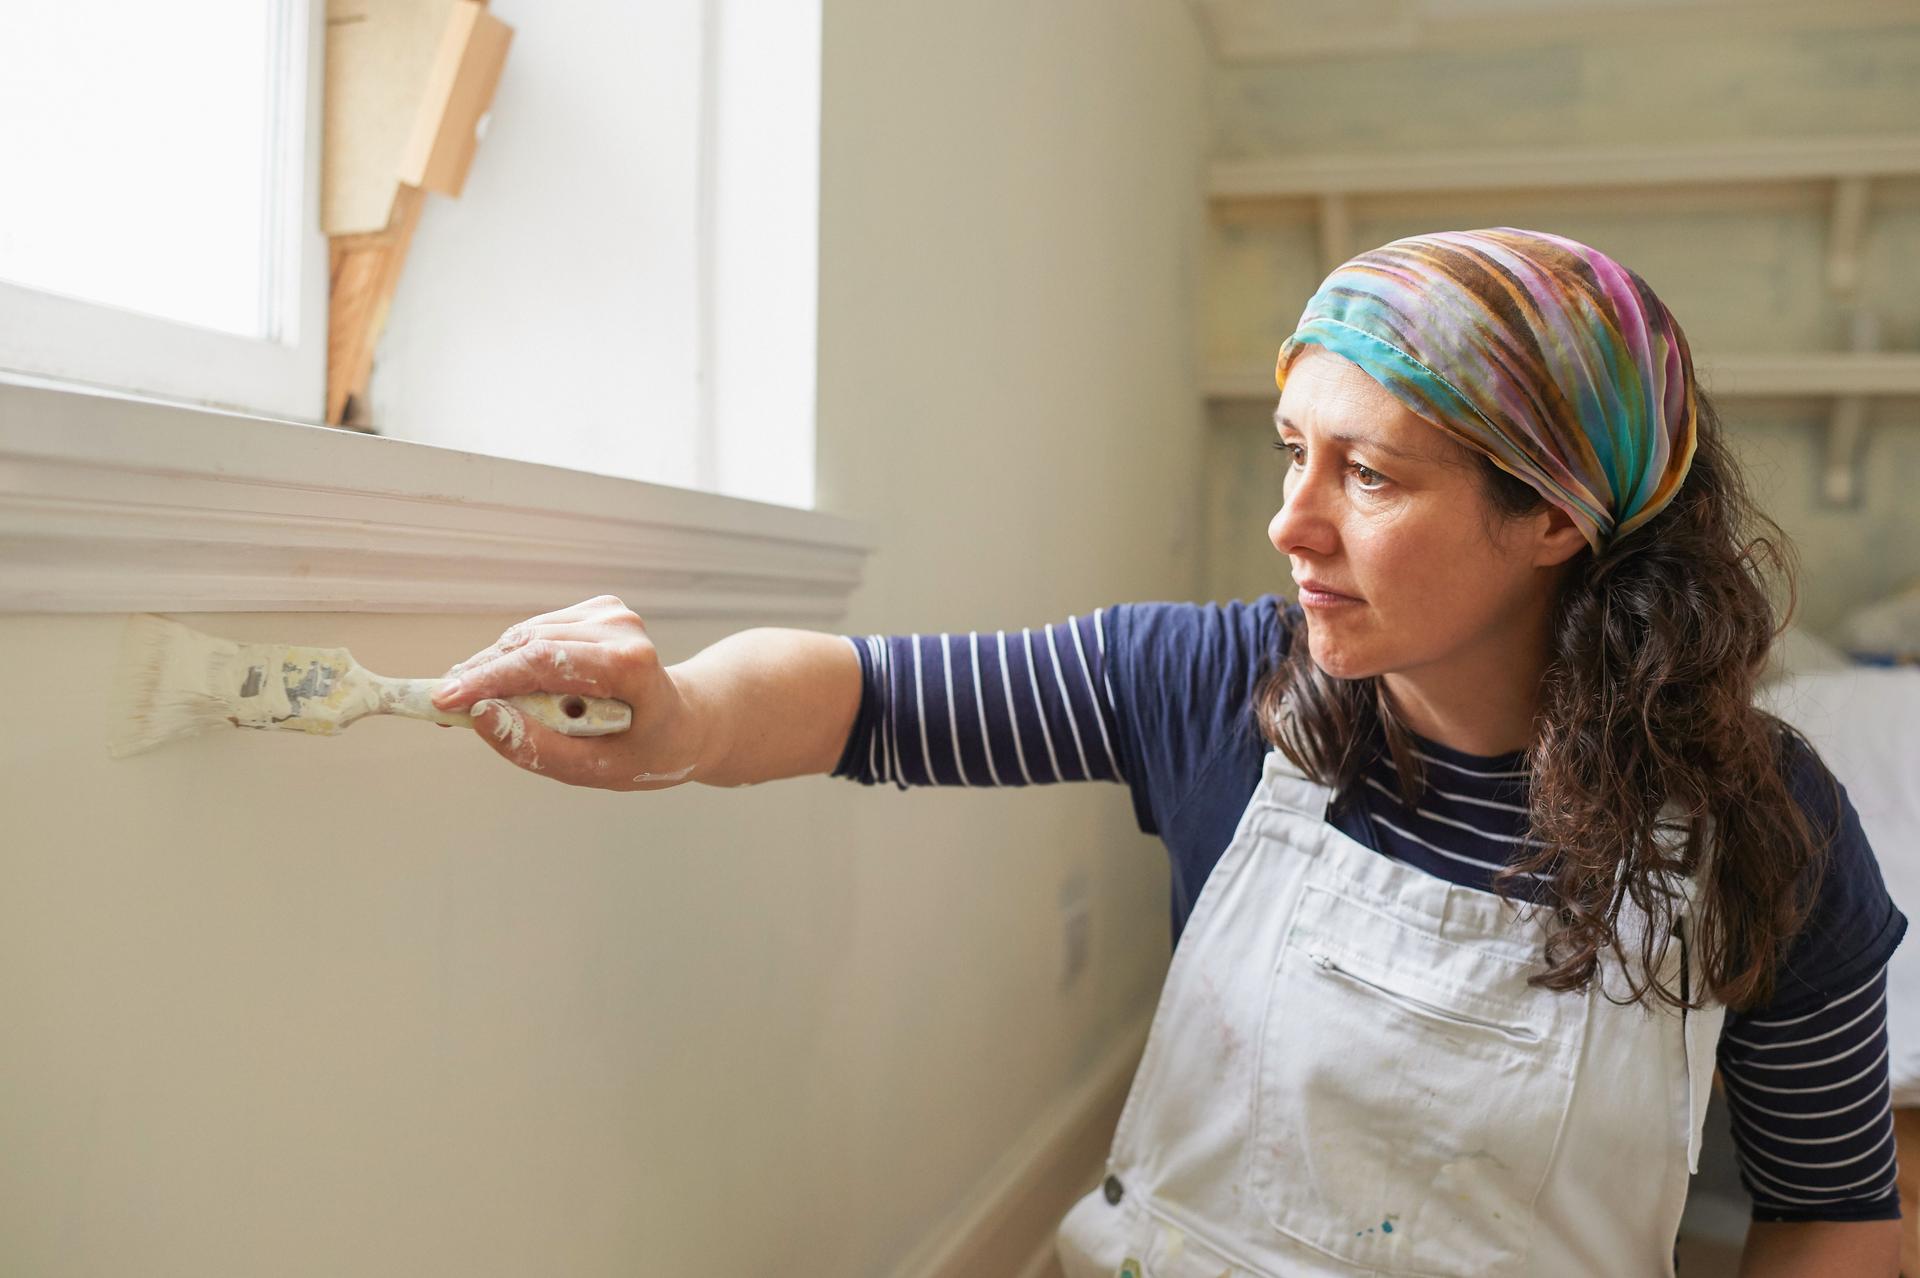 Frau in Latzhose streicht sitzend mit einem Pinsel eine weiße Wand unterhalb einer Fensterbank.